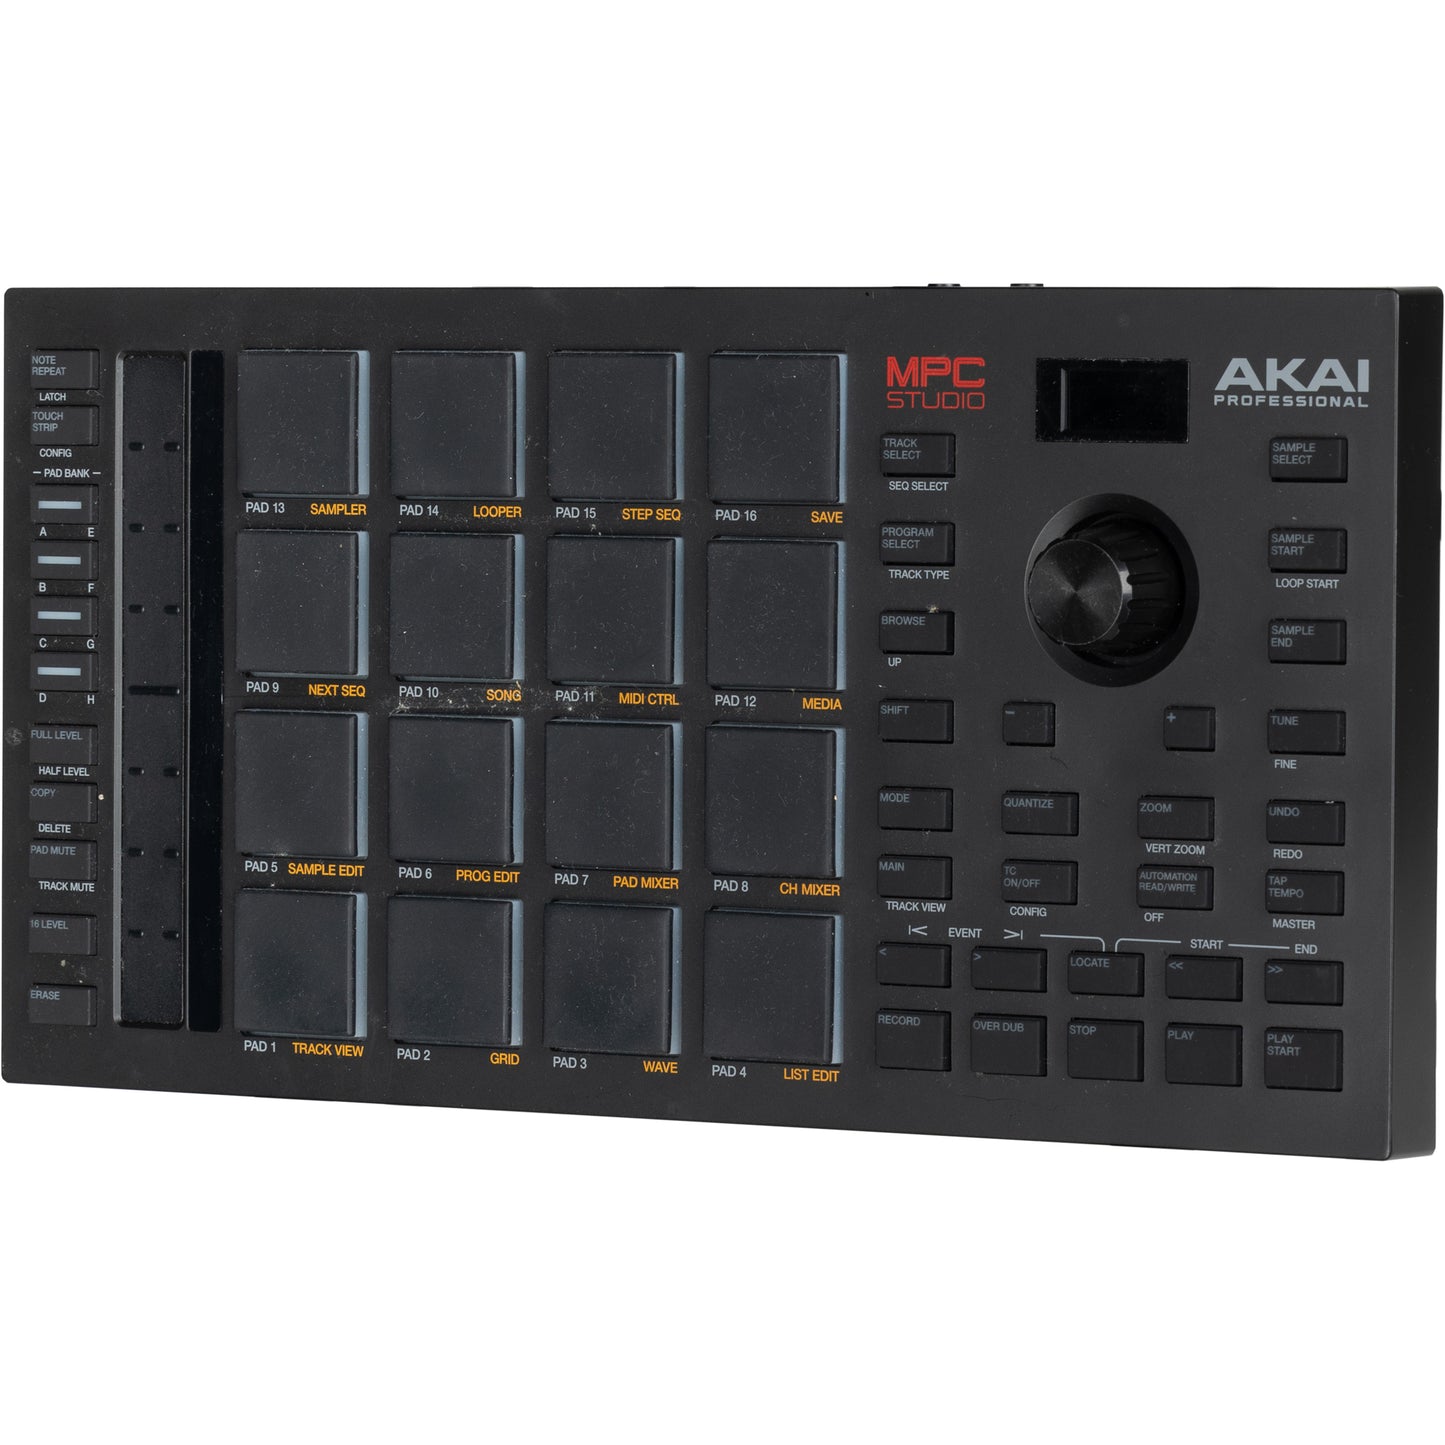 Akai Professional MPC Studio MIDI Controller